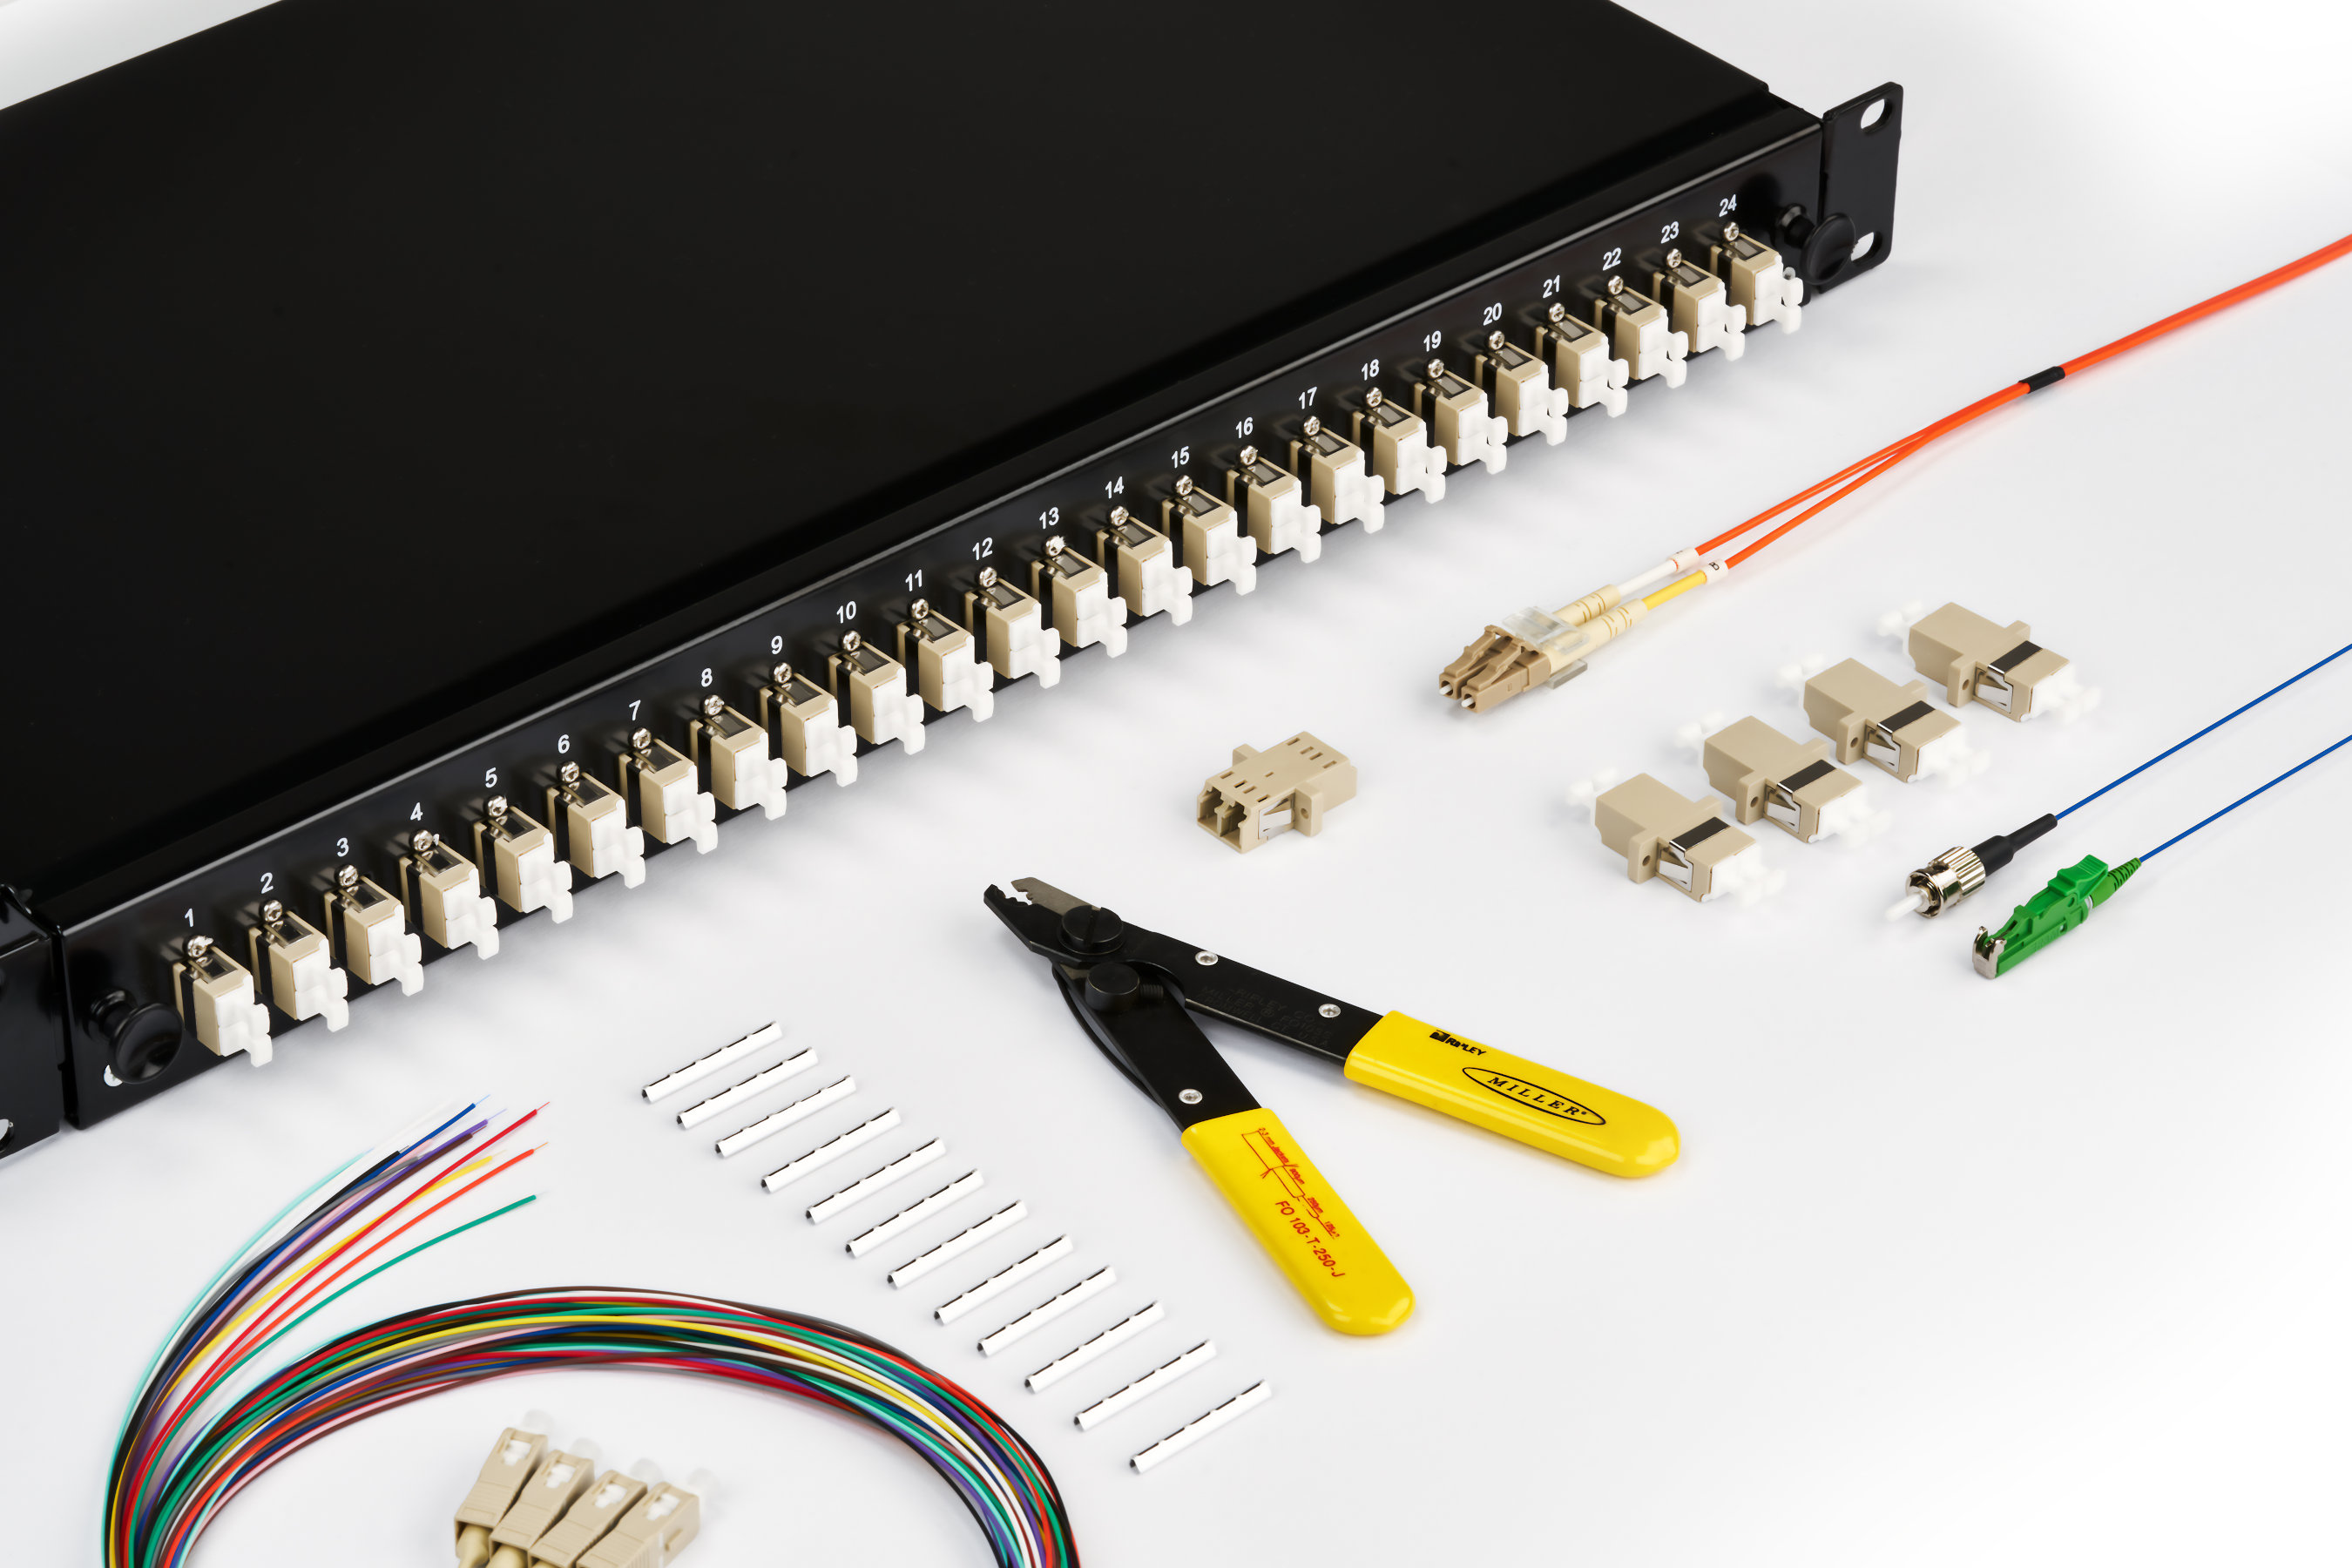 Glasfaser-Verkabelungssatz mit Patchpanel, Glasfaserkabeln, Steckern, Abisolierwerkzeug und Adaptern.